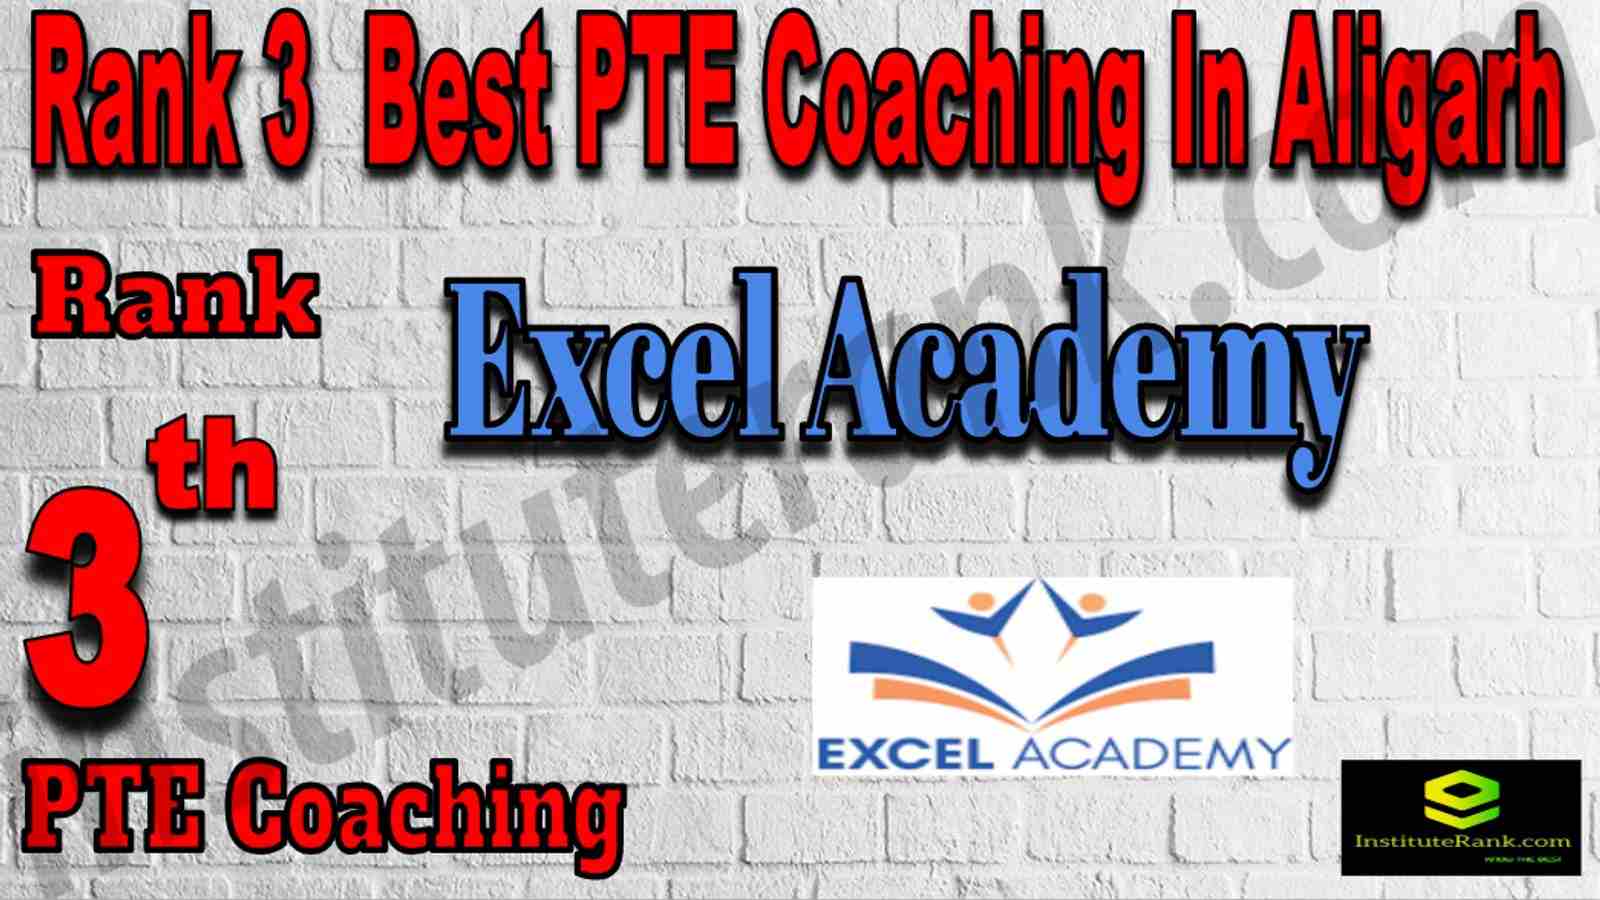 Rank 3 Best PTE Coaching In Aligarh